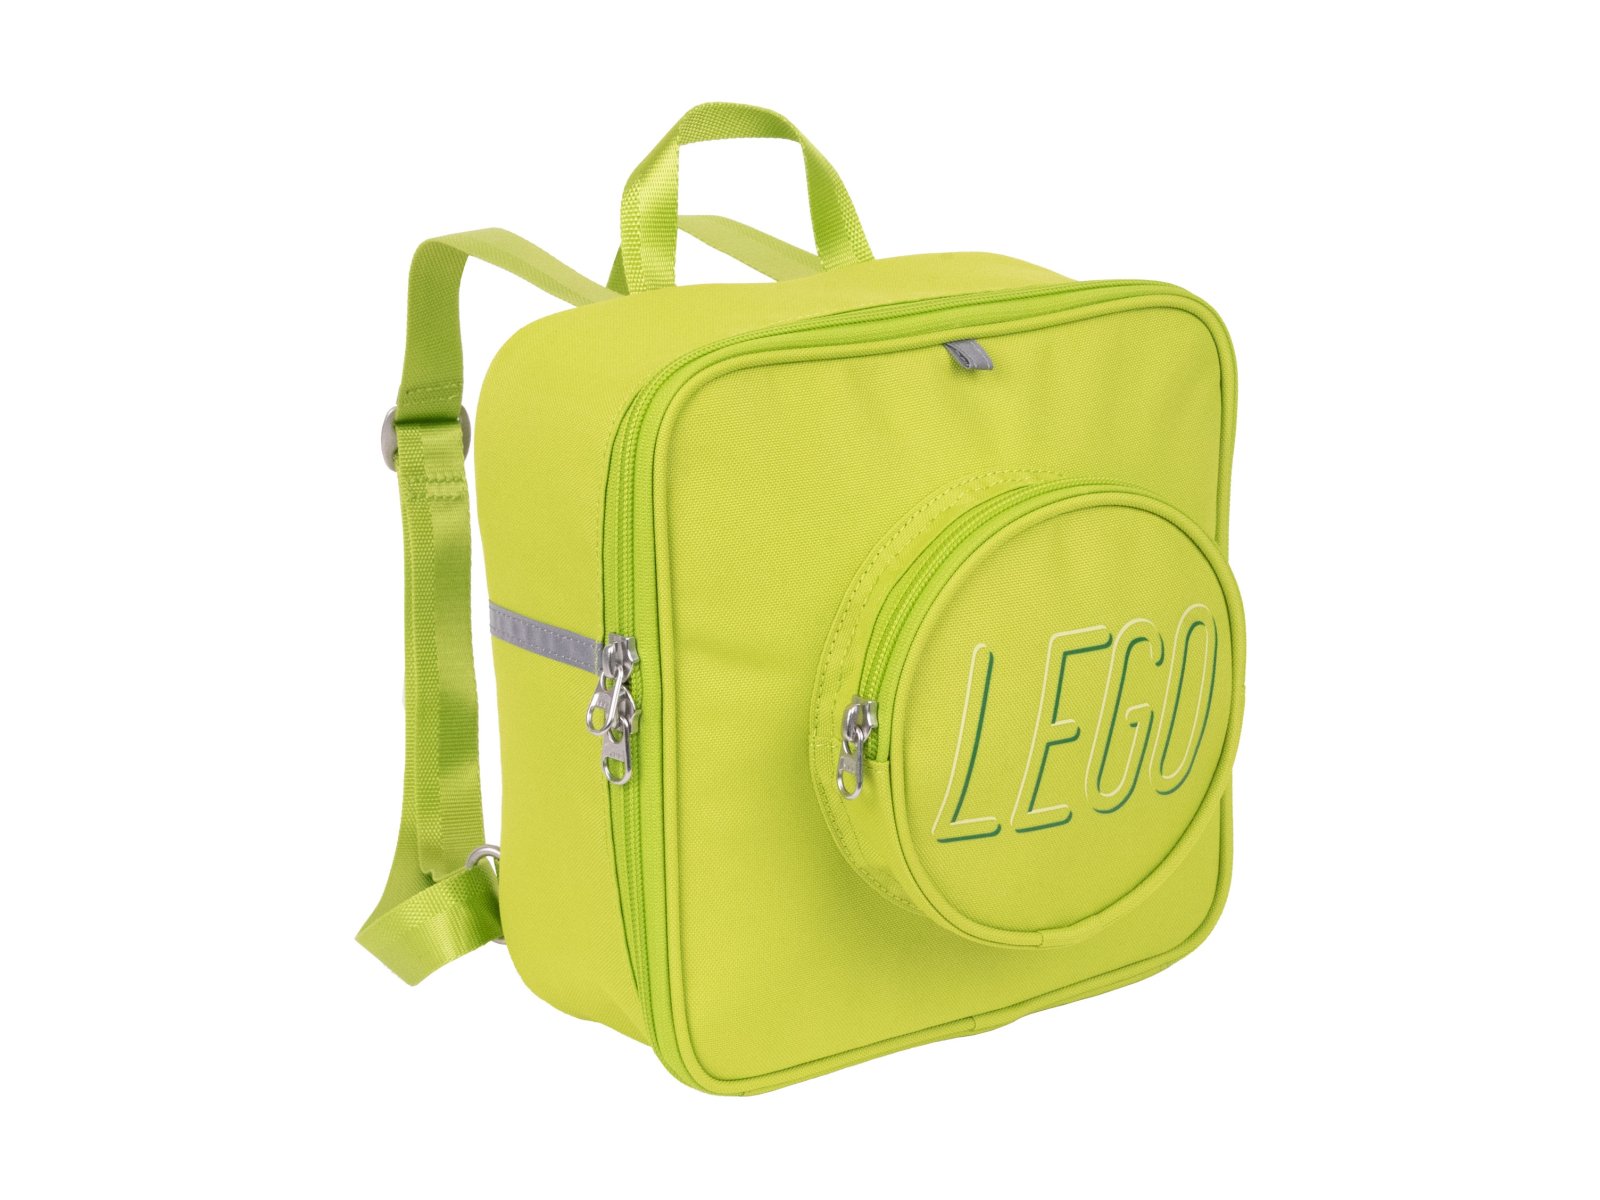 LEGO 5006496 Mały plecak-klocek w kolorze limonkowym